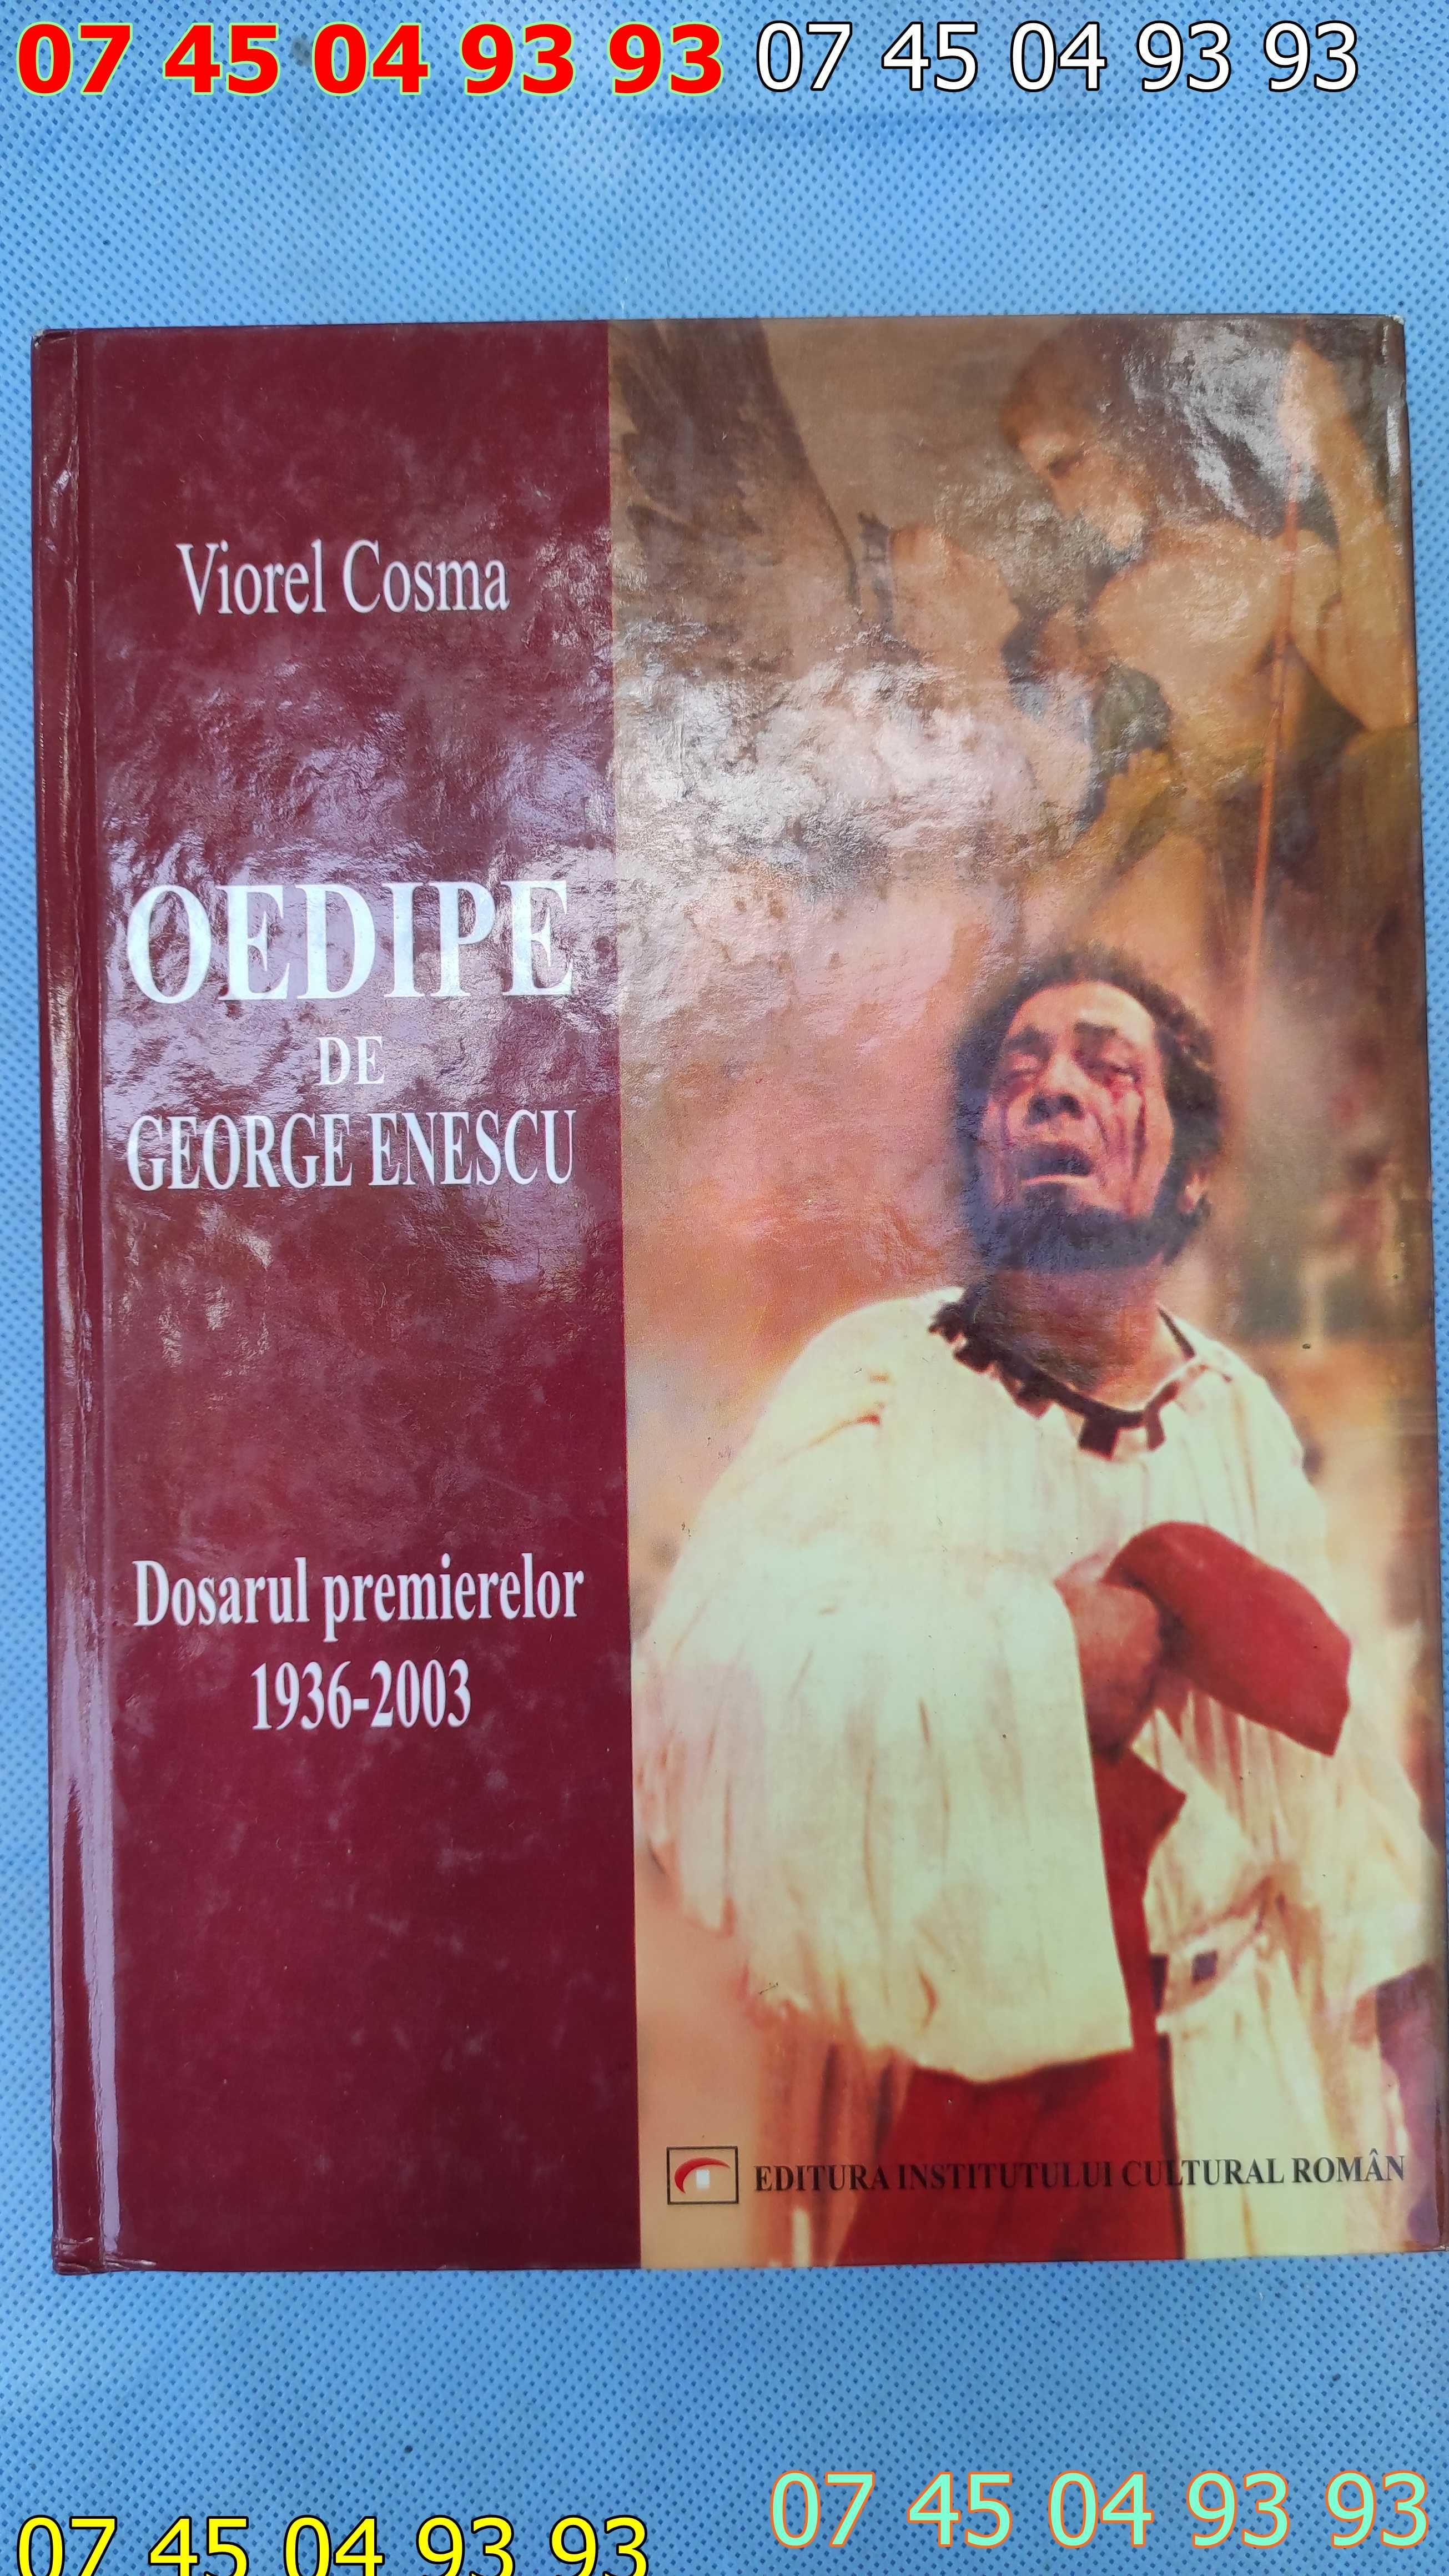 Viorel cosma oedipe de george enescu dosarul premierilor 1936-2003